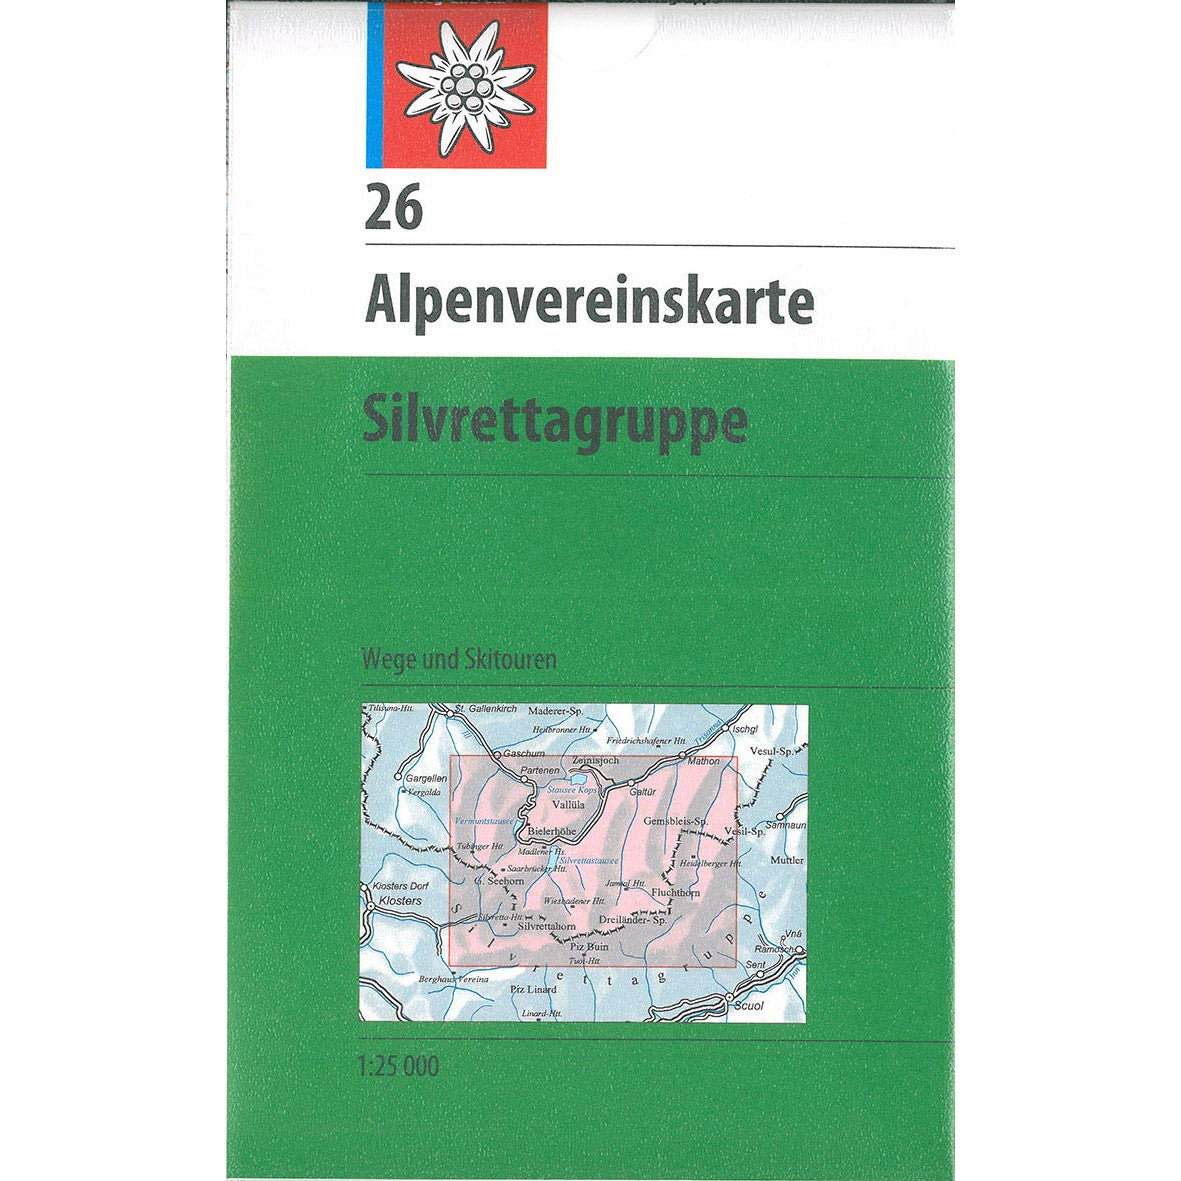 Alpenvereinskarte Silvrettagruppe Ski Touring Map | Backcountry Books